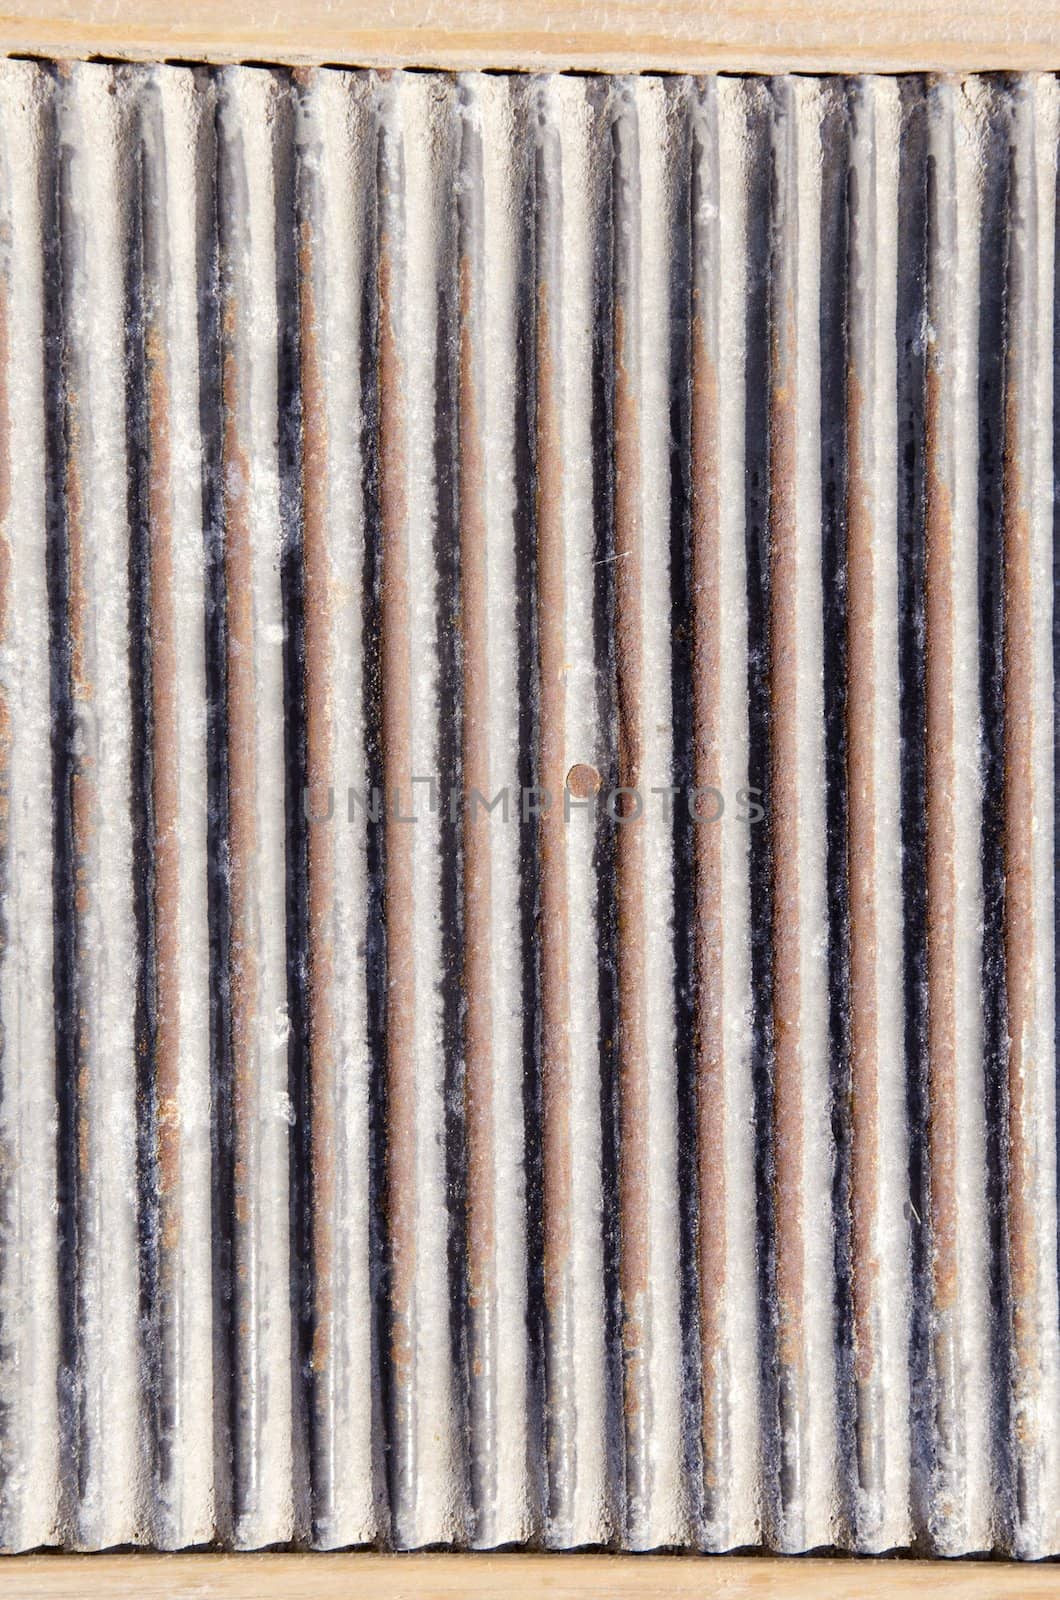 Rusty metal wall background. Vintage steel details.